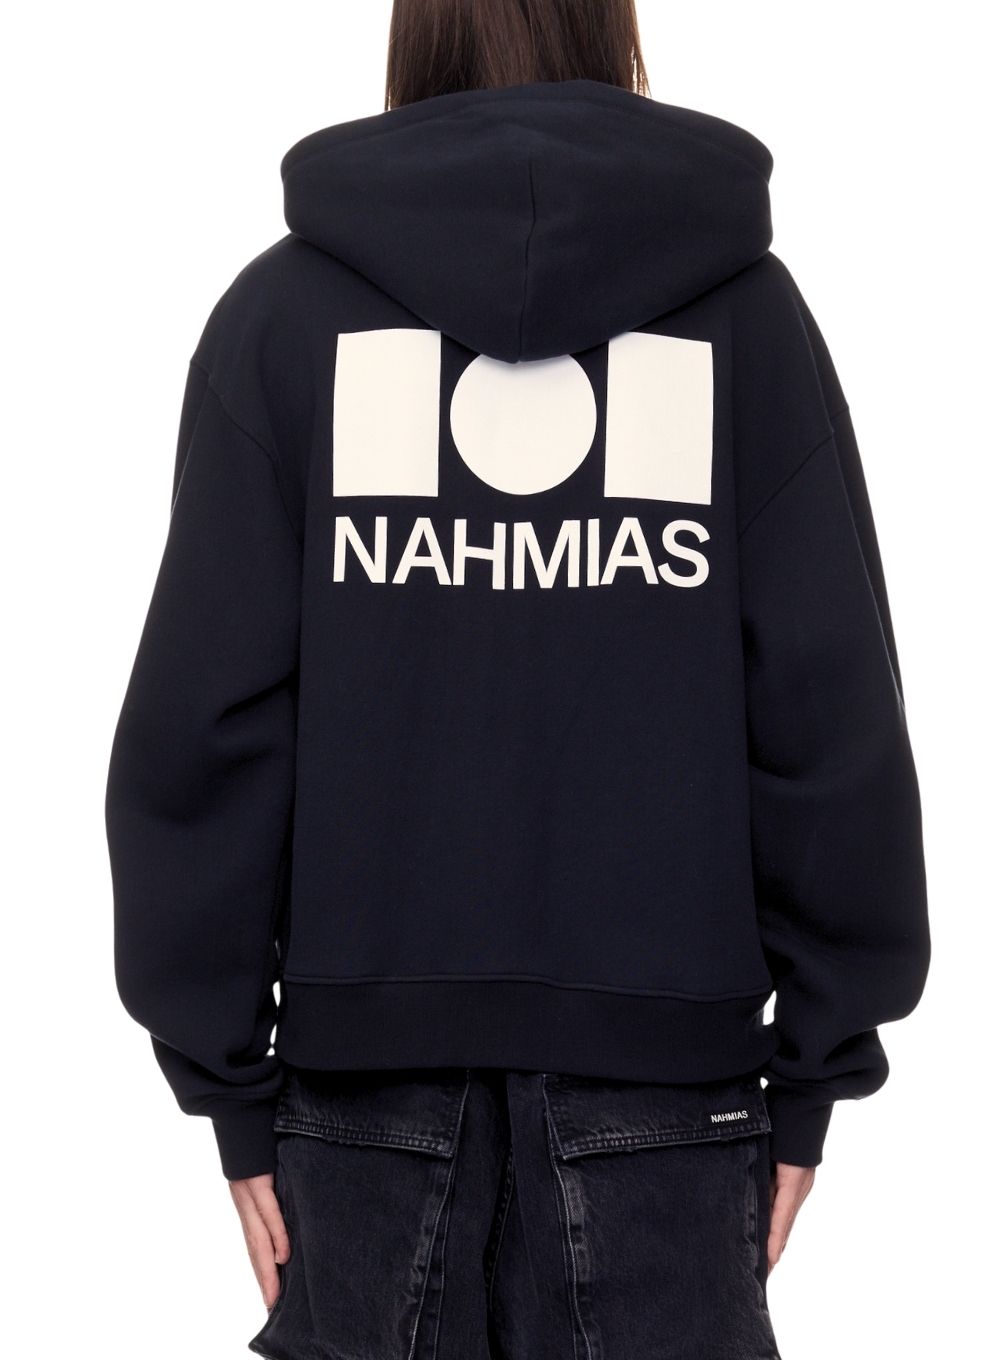 Nahmias Kodak Black Superstars Hooded Coat